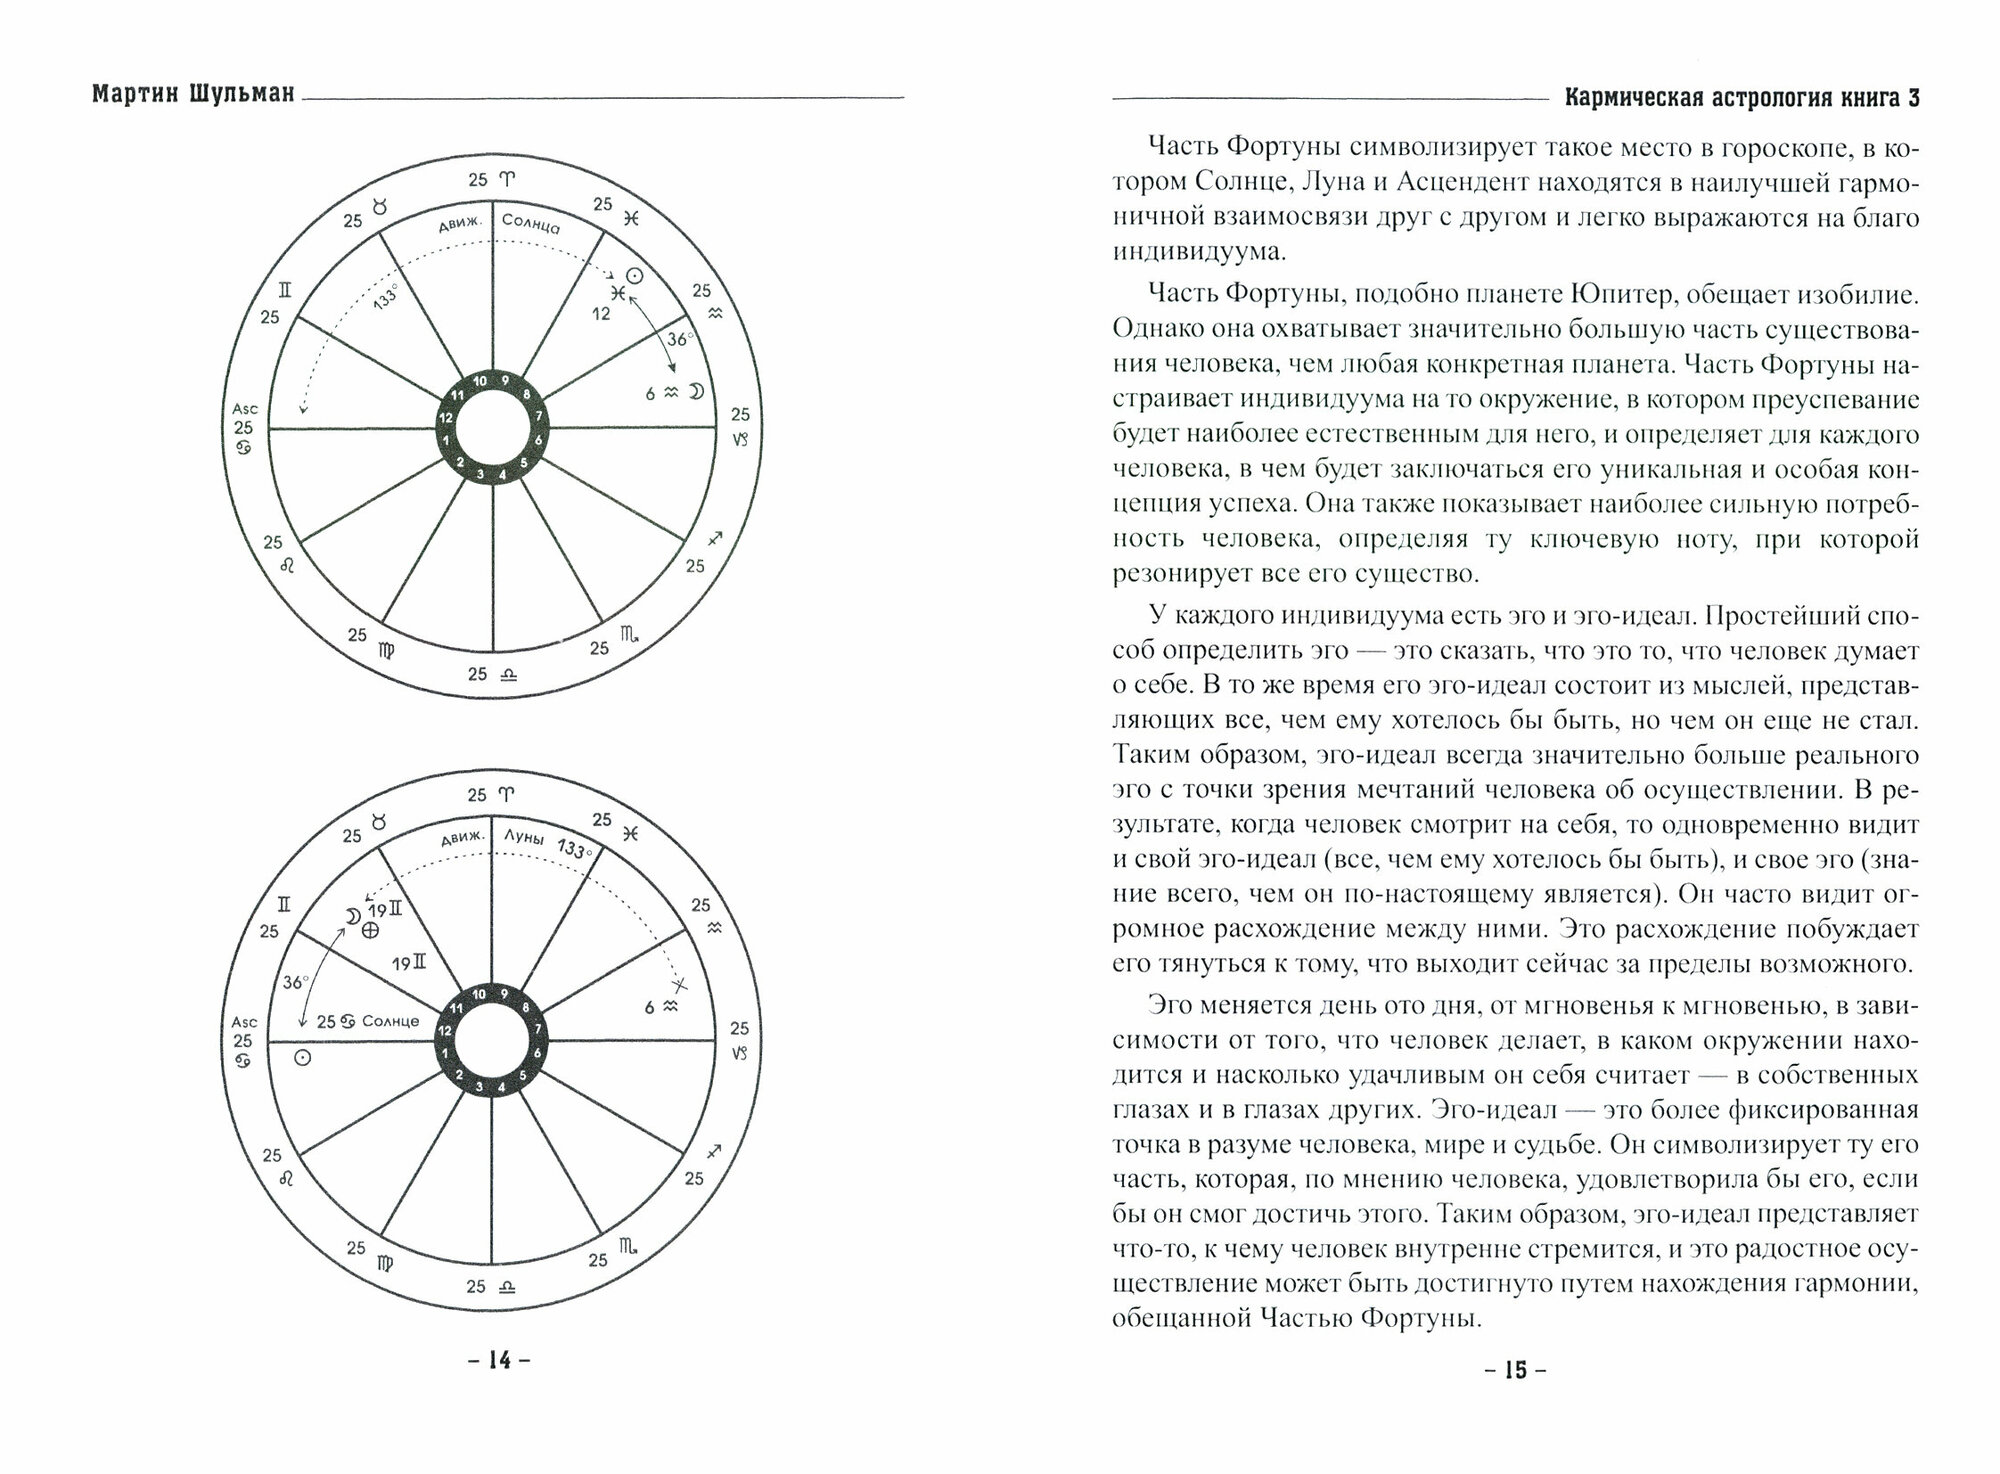 Кармическая астрология. Часть фортуны и Радость. Карма настоящего. Книги 3-4 - фото №5